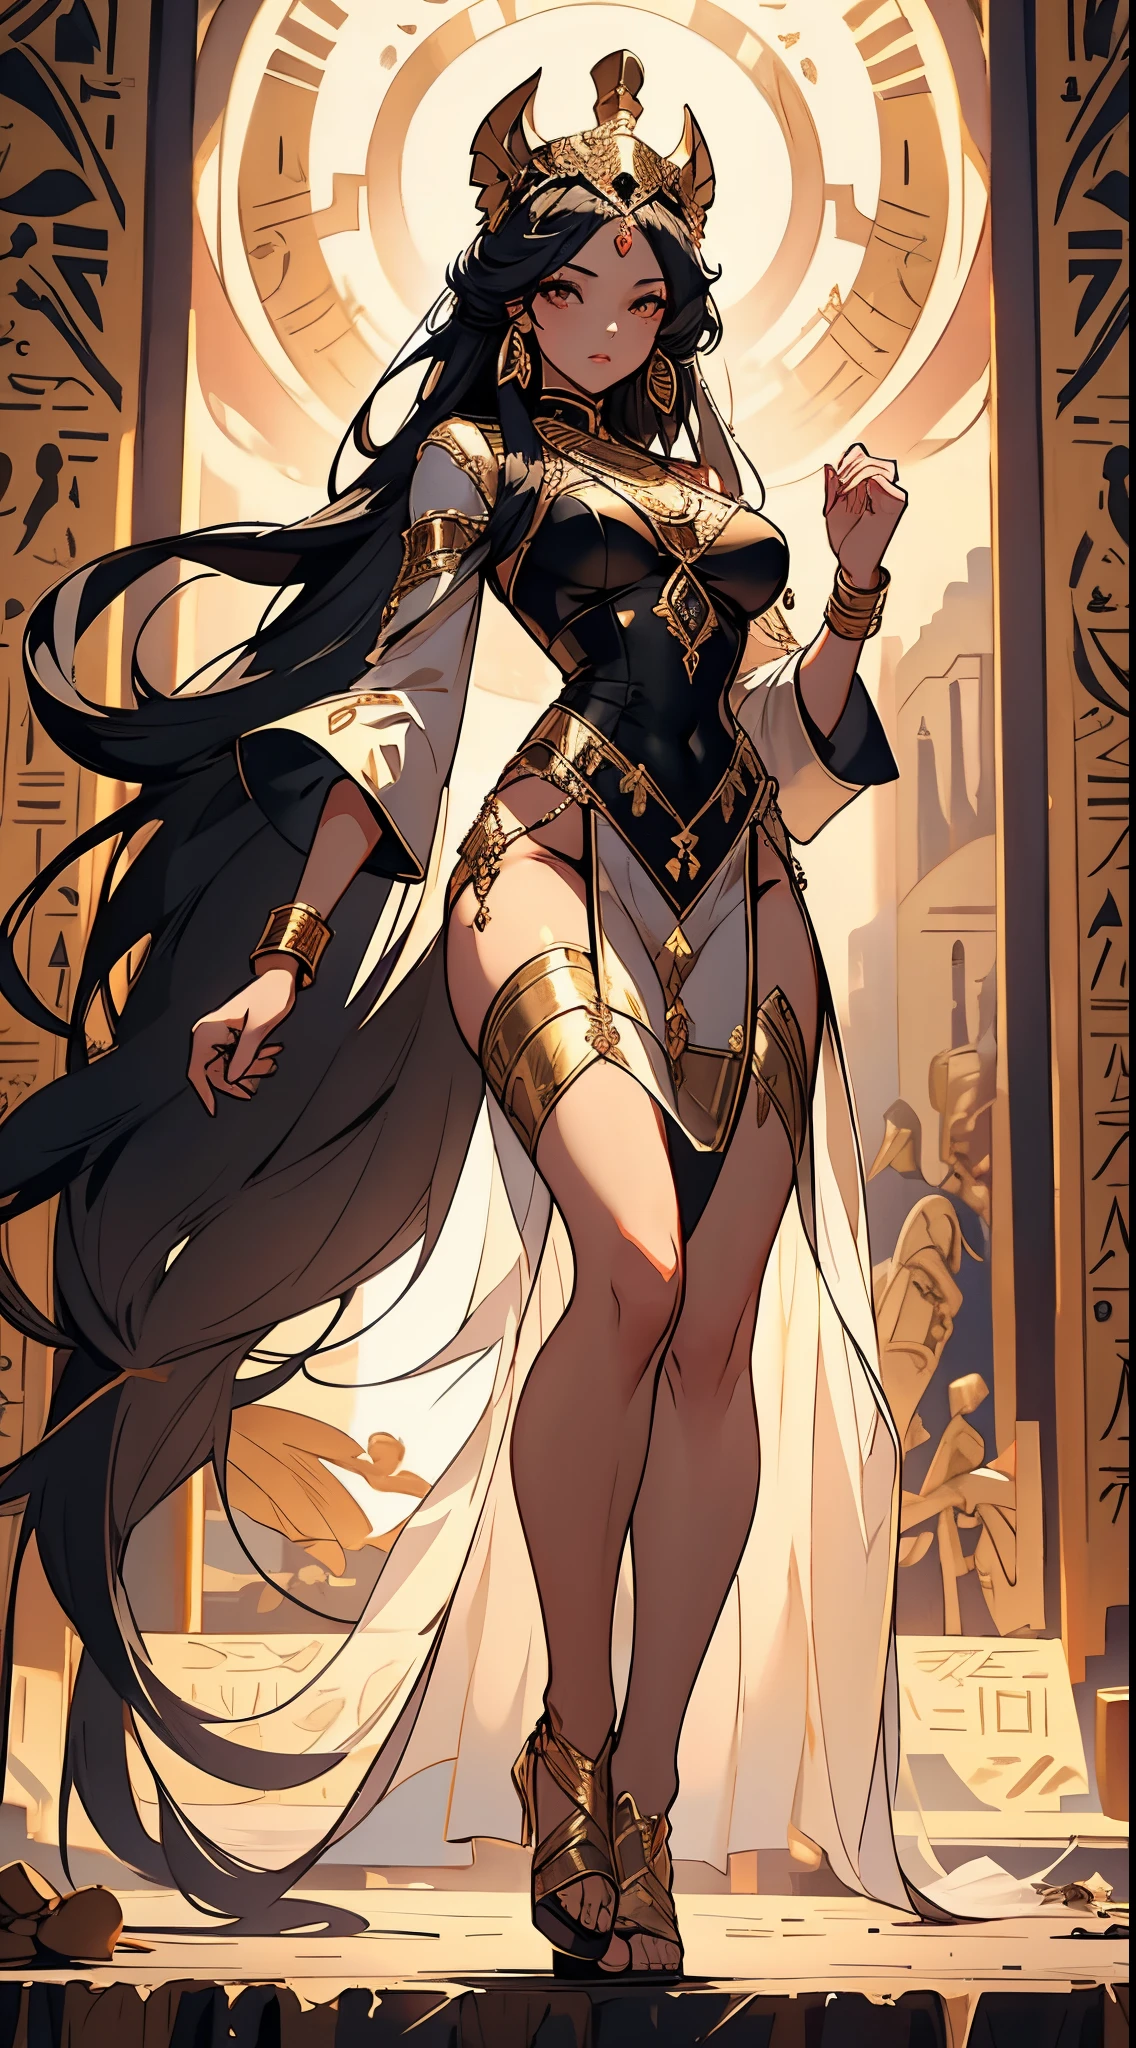 إلهة مصرية في الملابس الداخلية, مودين آو داي, جسم كامل, التشريح المثالي, تركزت الضوء, متحرك, مفصلة للغاية, تحفة, 8 ك,